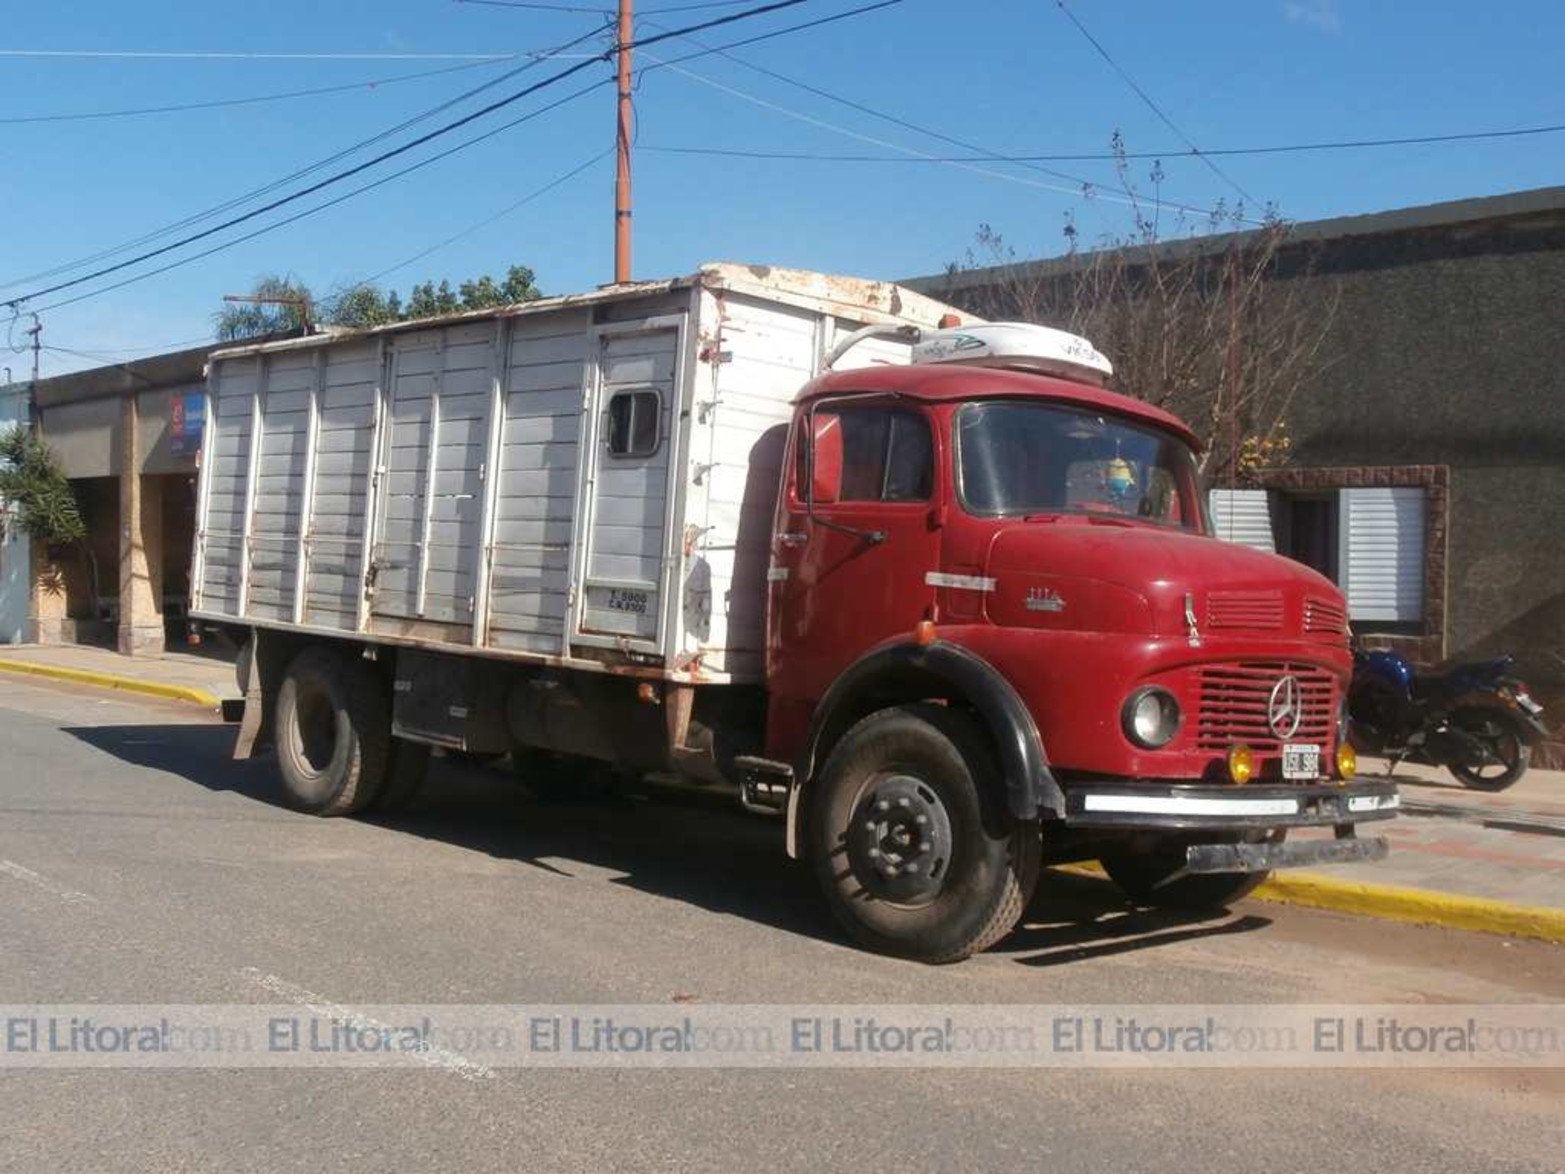 Junto al contenedor había otro camión chico -un Mercedes Benz 1114-, que escapó con parte de la droga. El vehículo fue secuestrado el 5 de junio de 2015 en S.J. del Rincón.